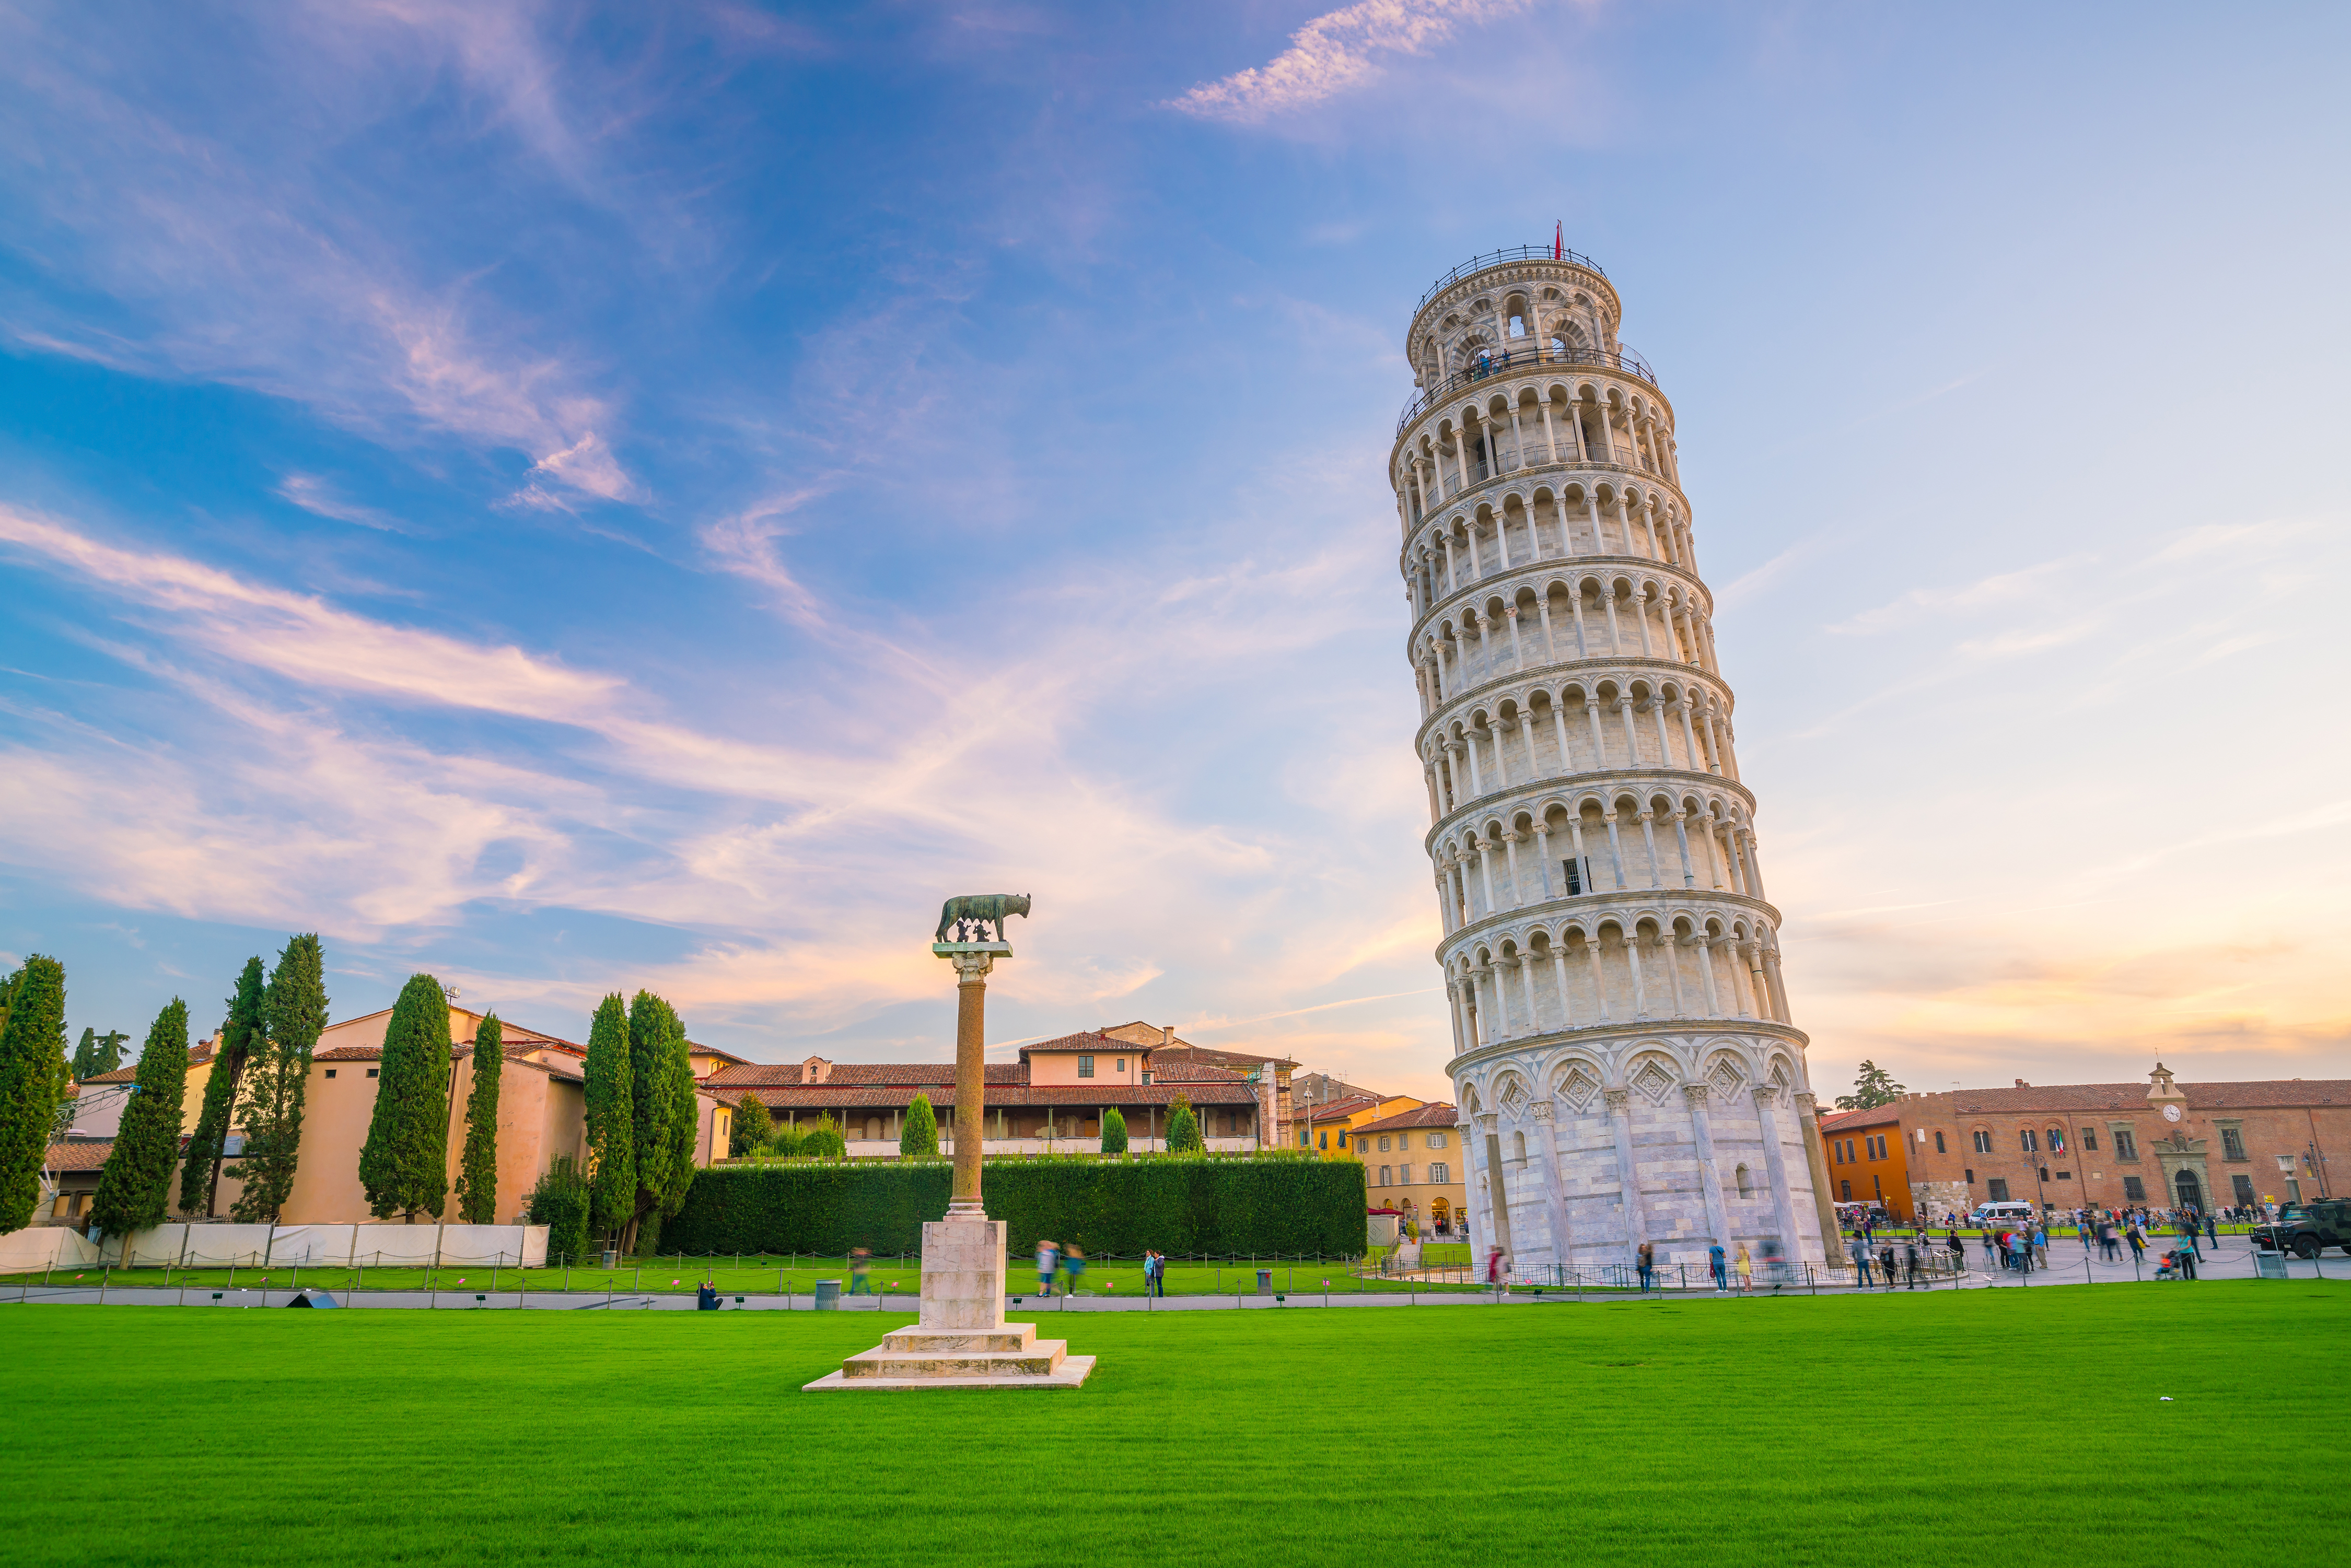 Достопримечательность какой страны является. Пизанская башня Италия. Достопримечательности Италии Пизанская башня. Падающая Пизанская башня. Падающая башня в Пизе.